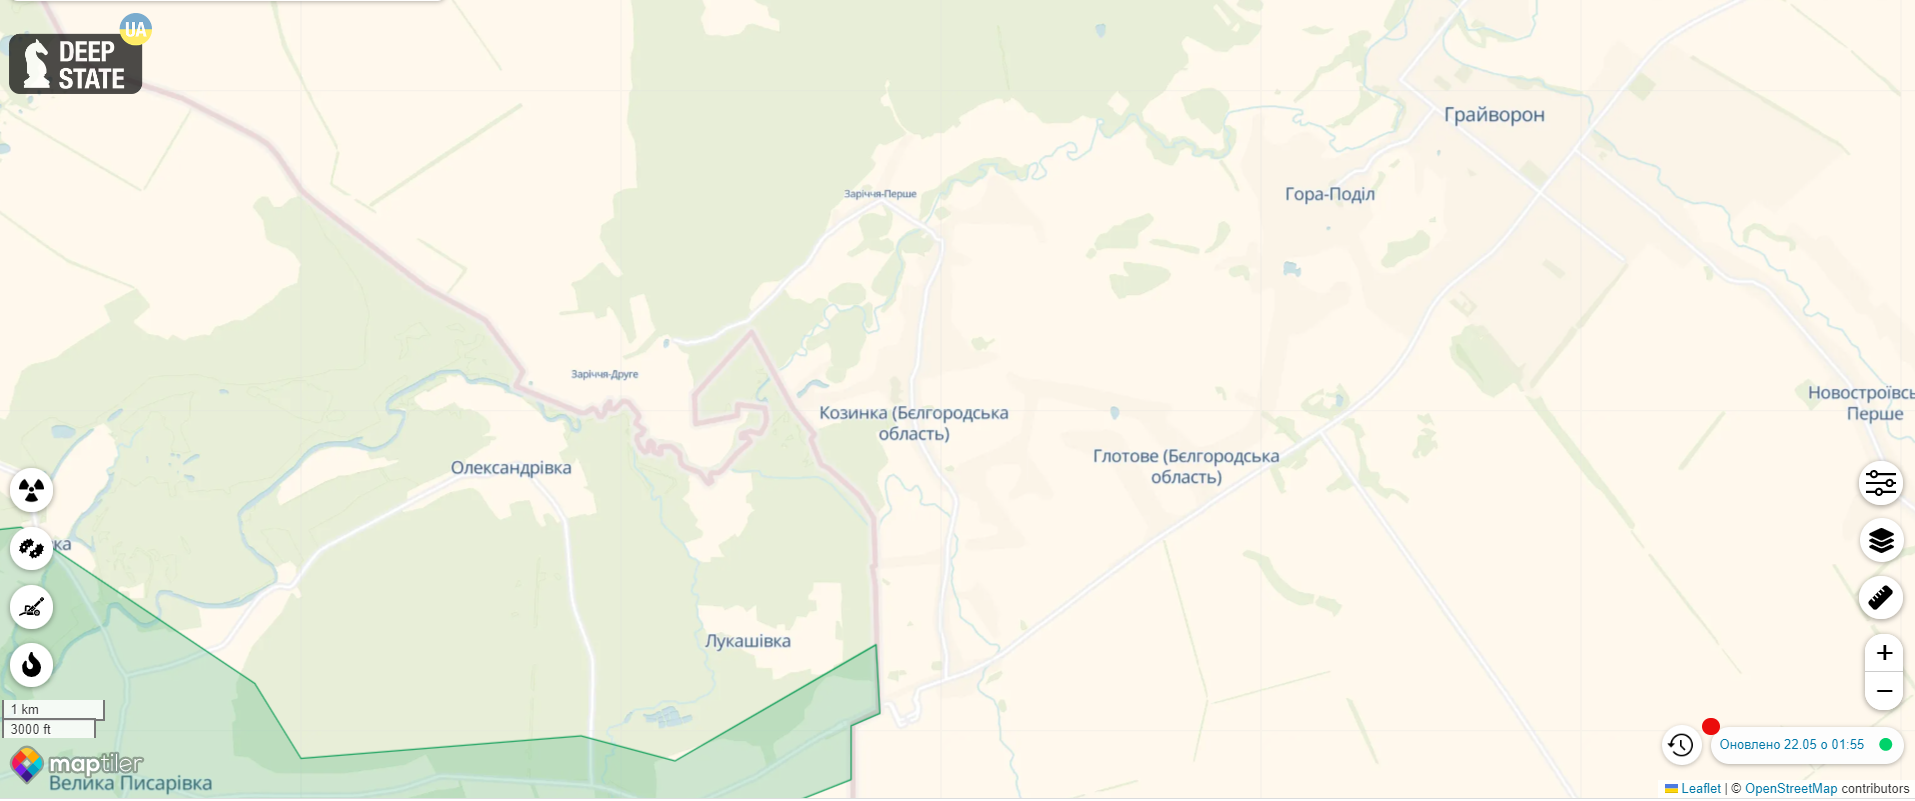 Российские добровольцы устроили спецоперацию в Белгородской области: в регионе объявили "КТО" и вывозят ядерные запасы. Все подробности